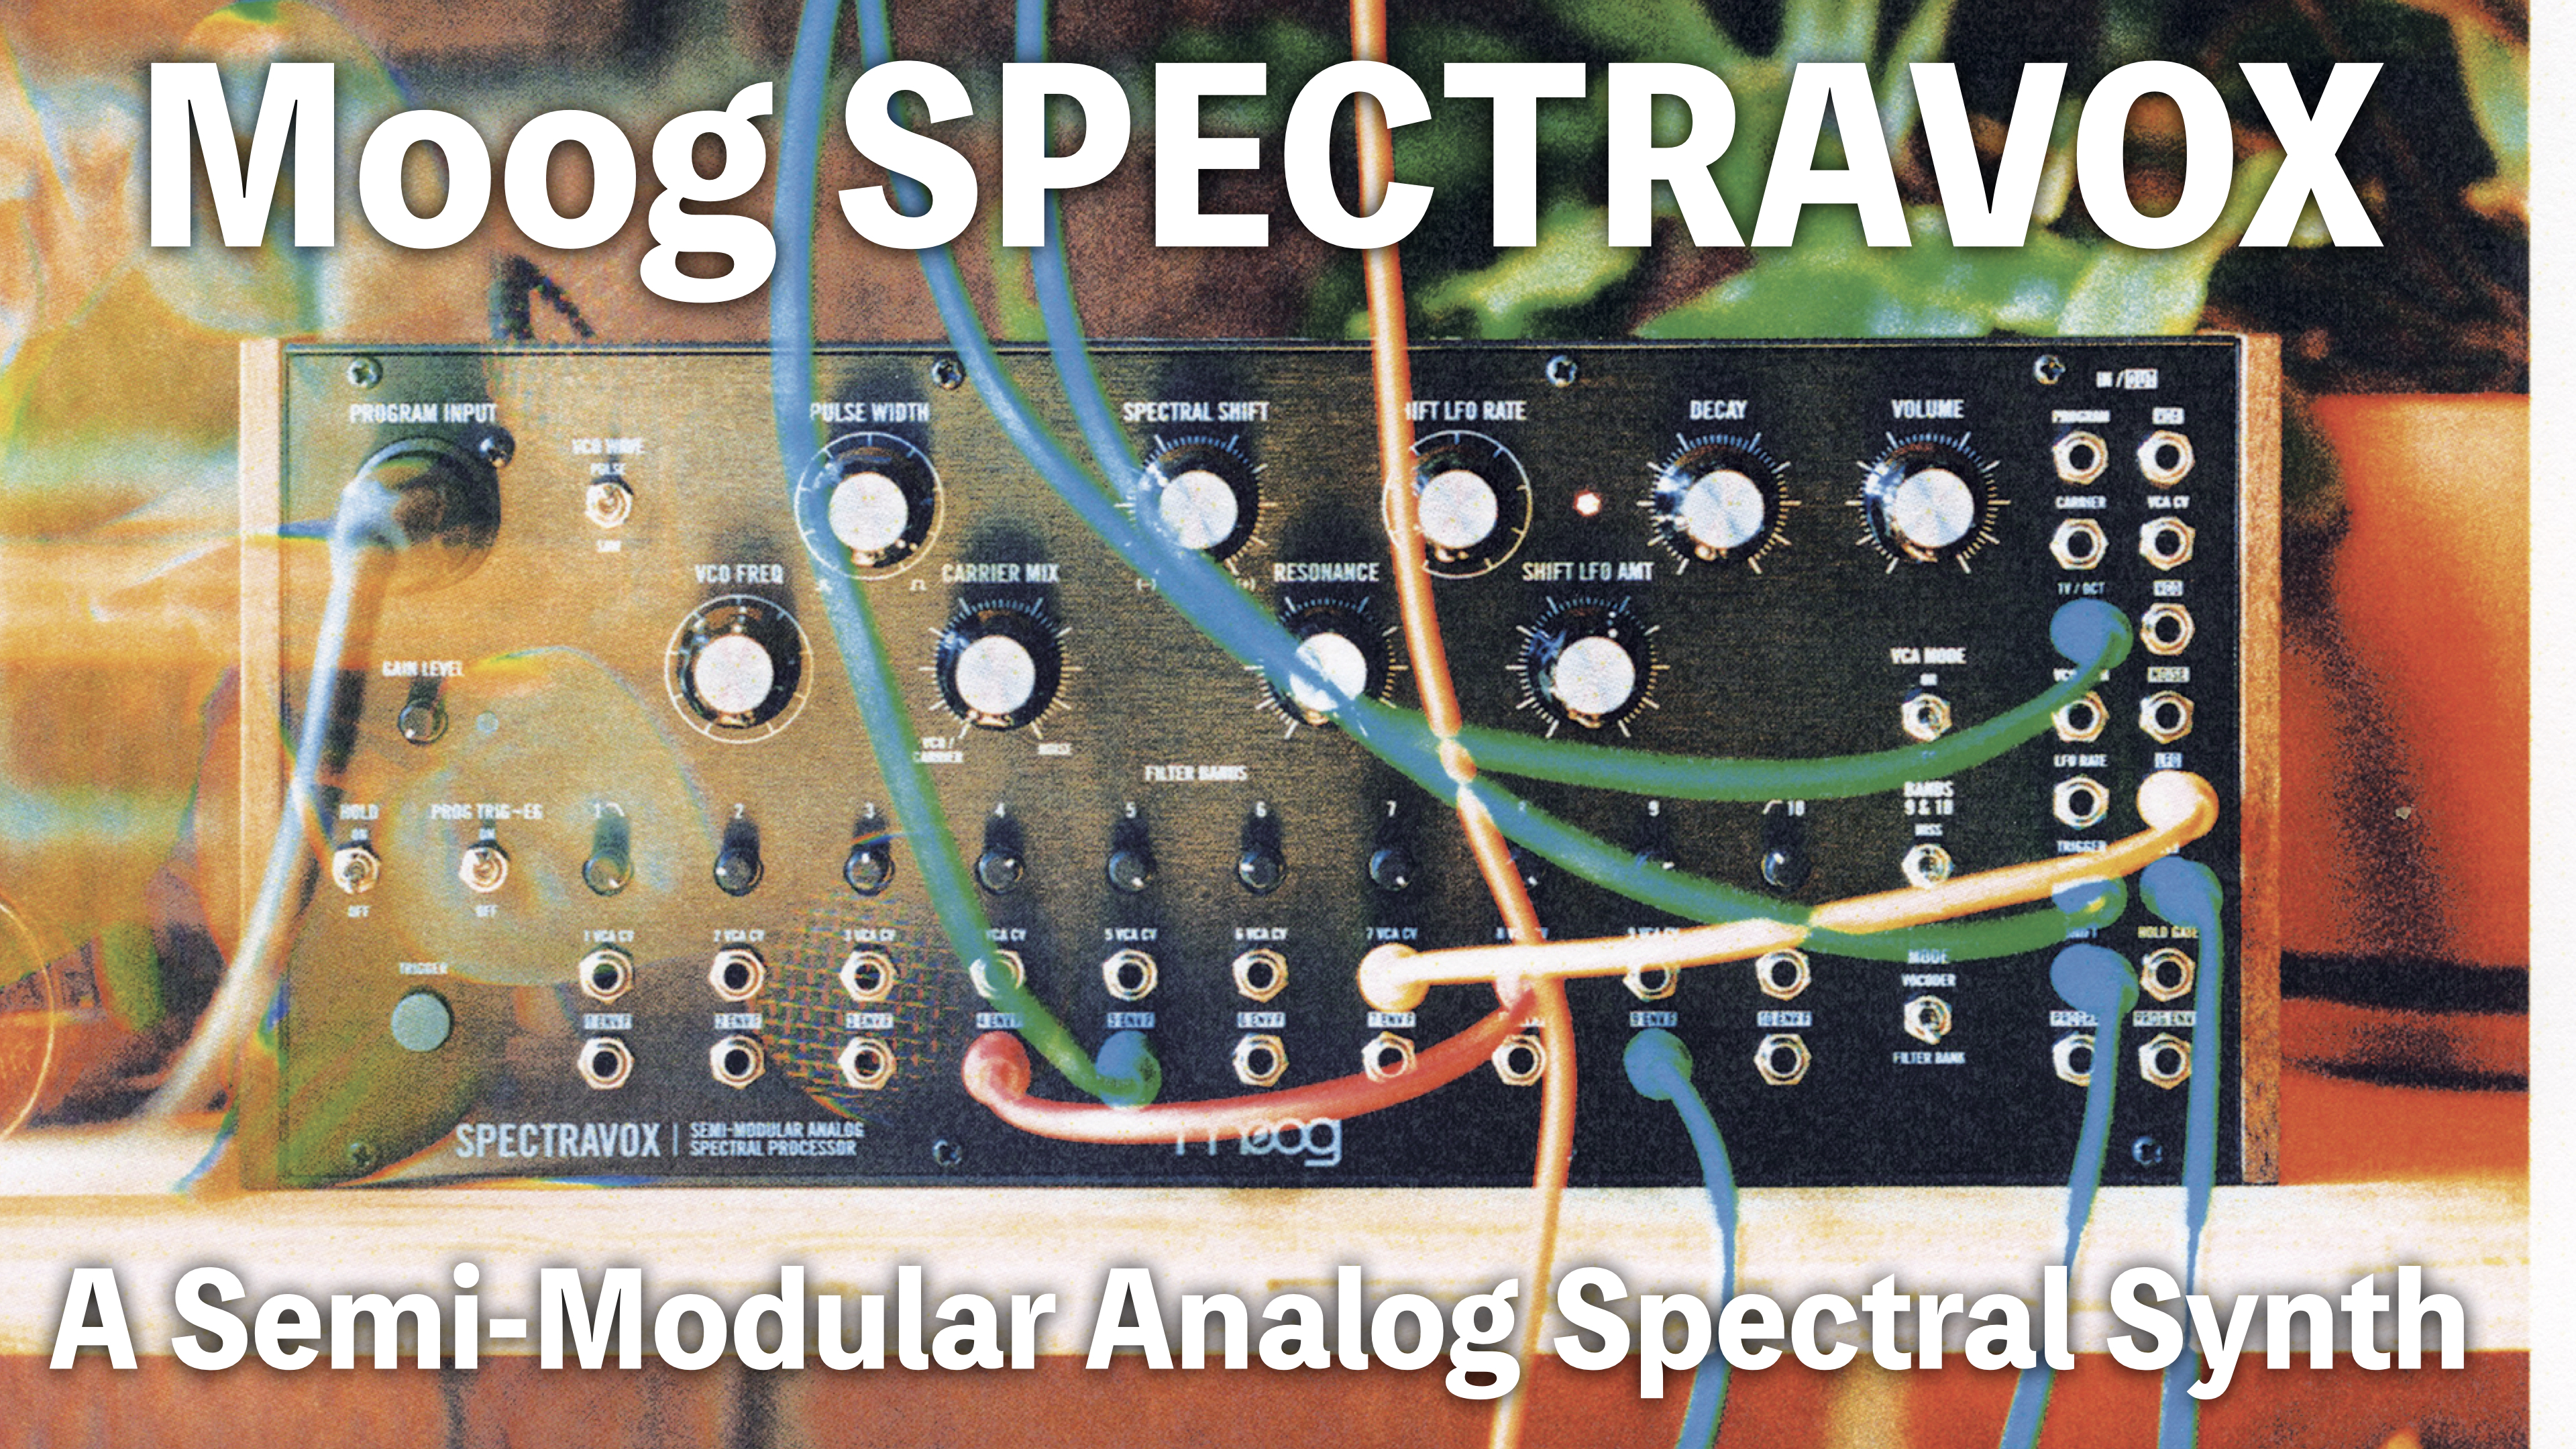 Moogから新たなセミモジュラーシリーズが仲間入り！Spectravoxというセミモジュラー仕様のアナログスペクトラルプロセッサー！Subharmoniconから実に4年ぶりとなるセミモジュラー4作目、以前からMOOGがセミモジュラー用の4段キットを発売していたので、担当も4作目を今か今かと待ってお […]